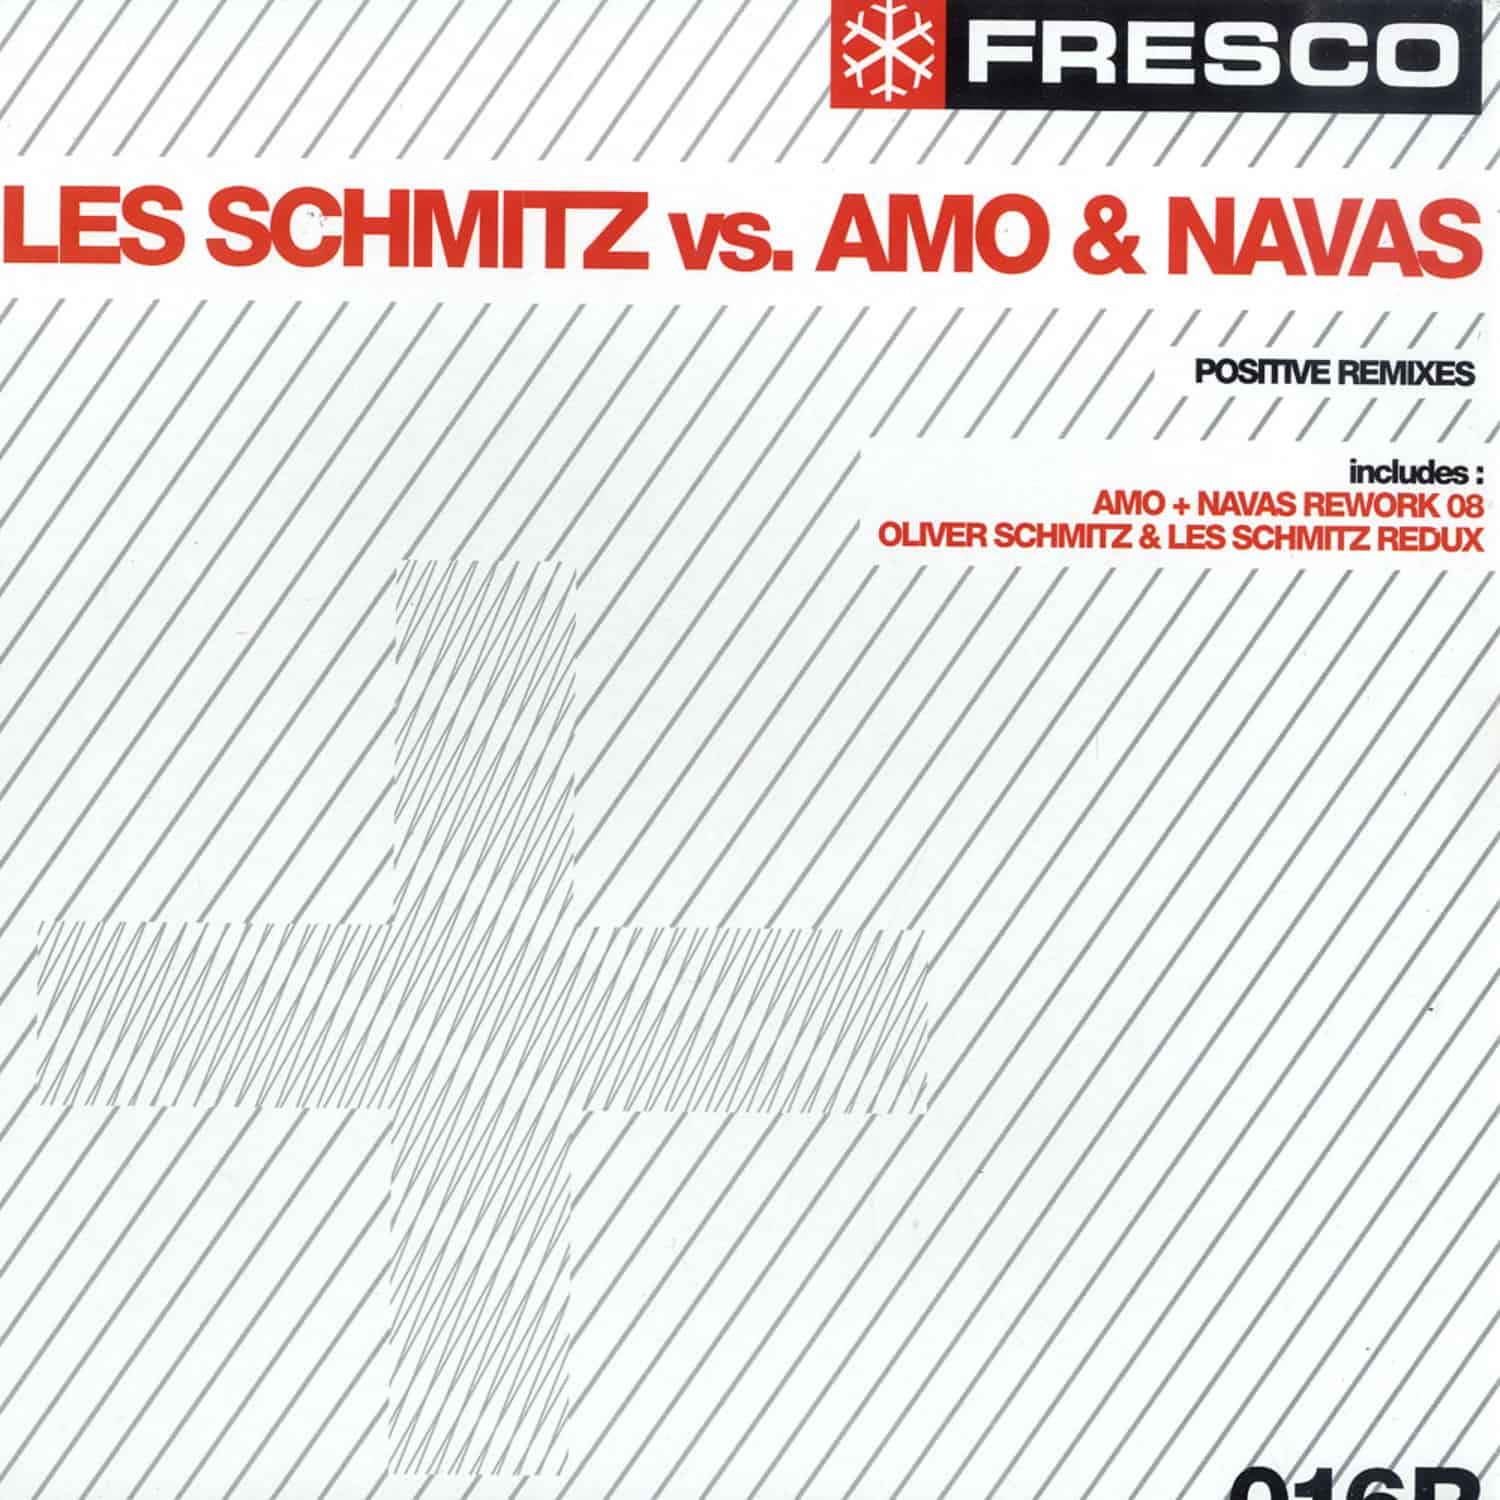 Les Schmitz vs. Amo & Navas - POSITIVE REMIXES